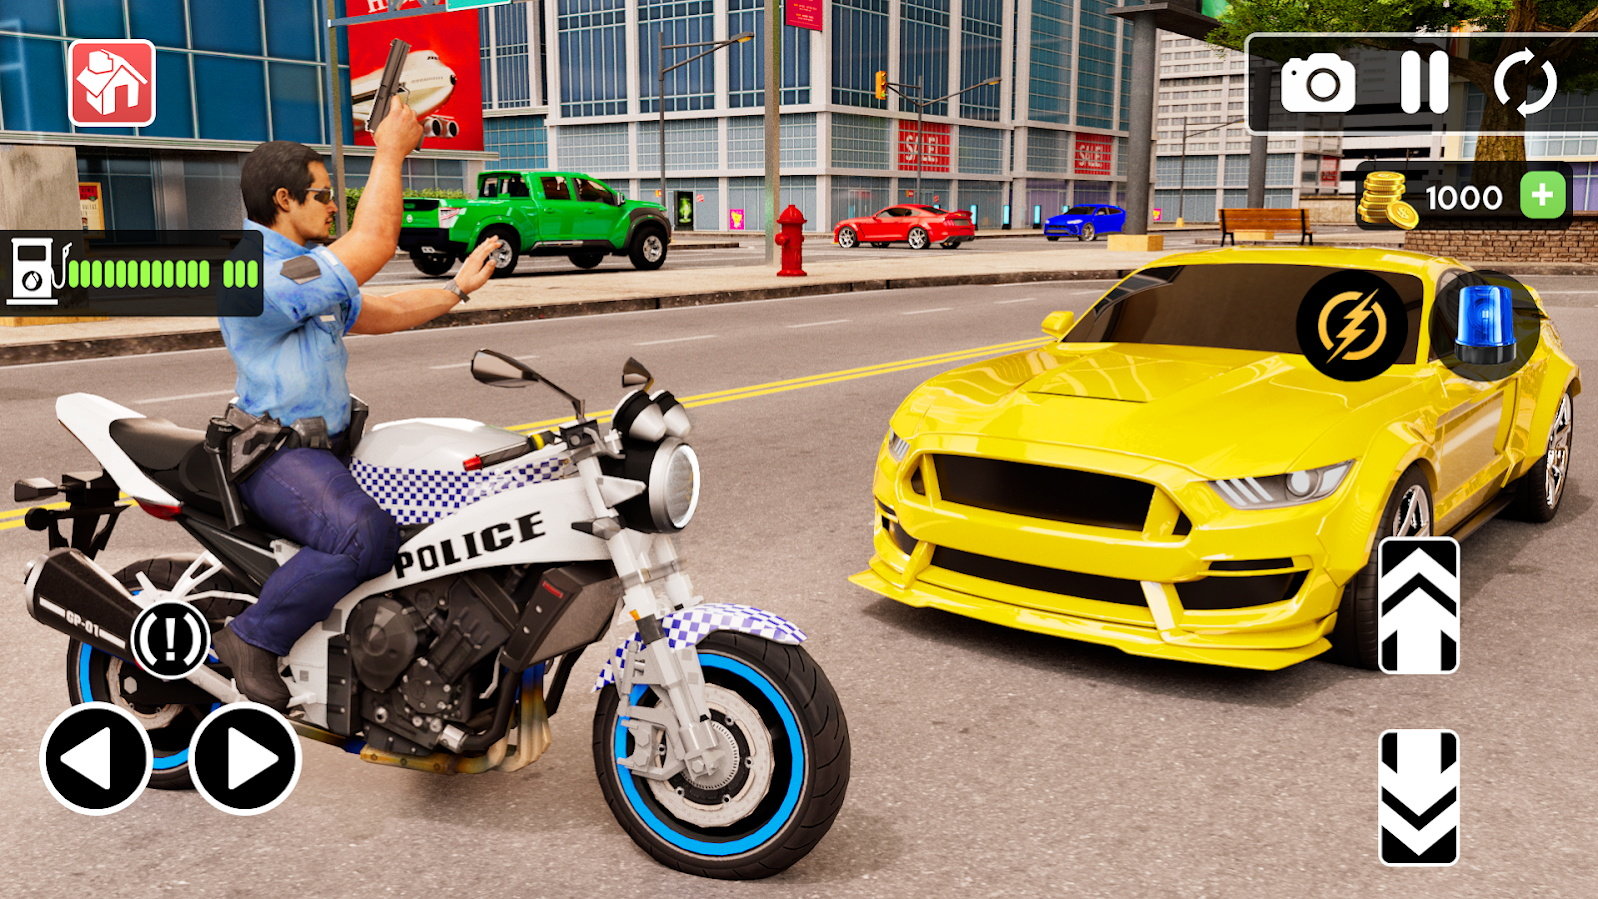 警察驾驶摩托车游戏手机版下载